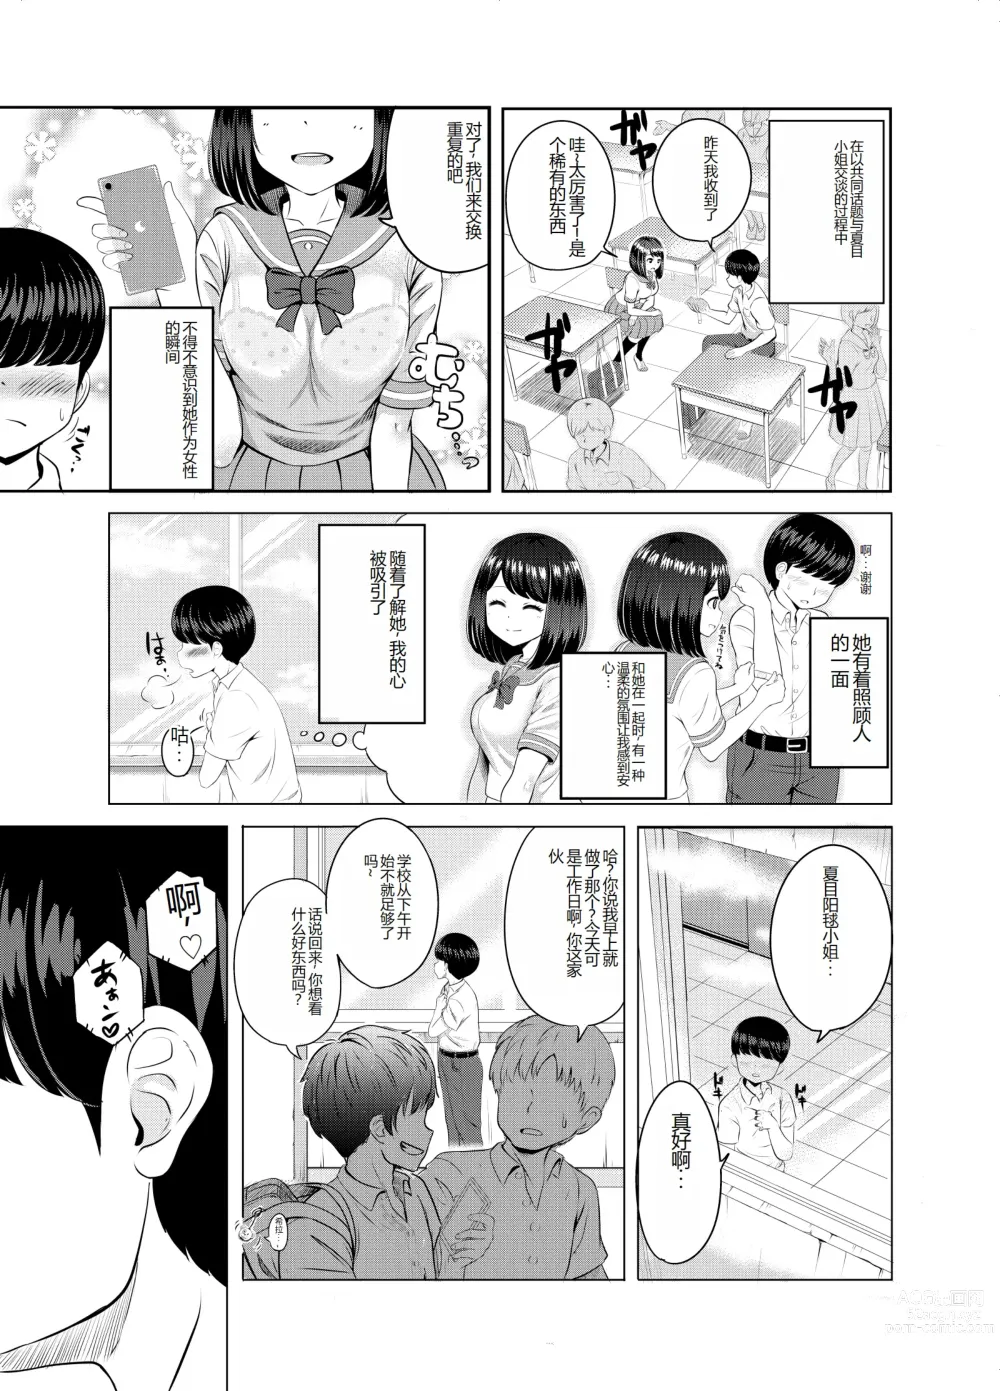 Page 6 of doujinshi 2-nen 3-kumi